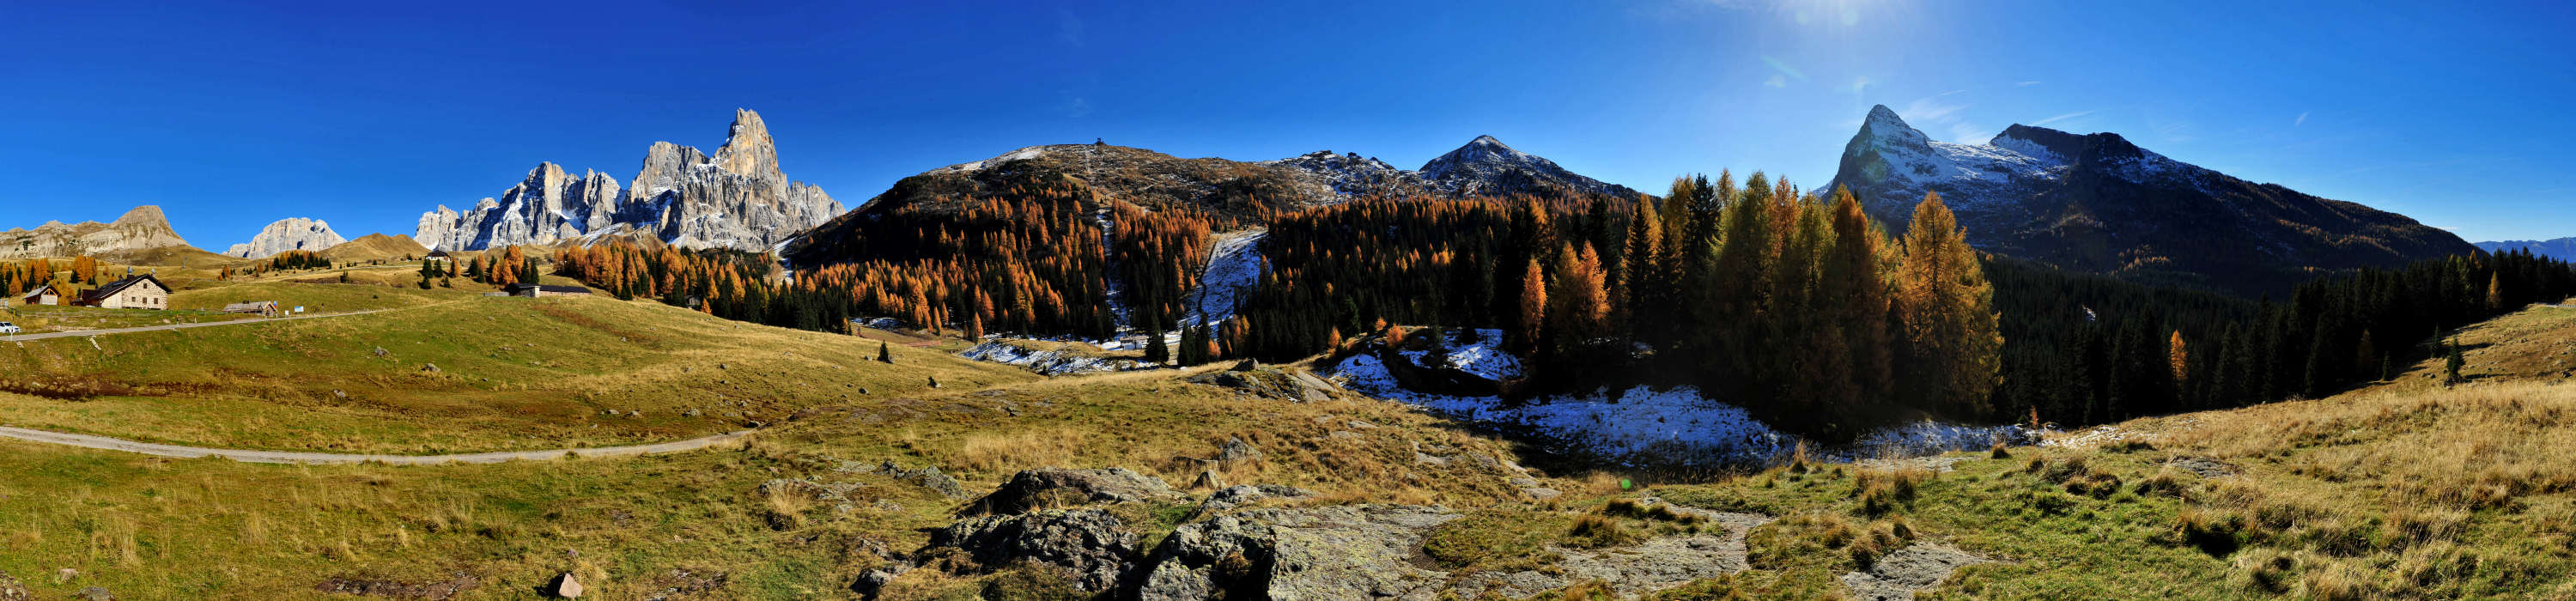 Cimon della Pala, Dolomiti, Pale di San Martino